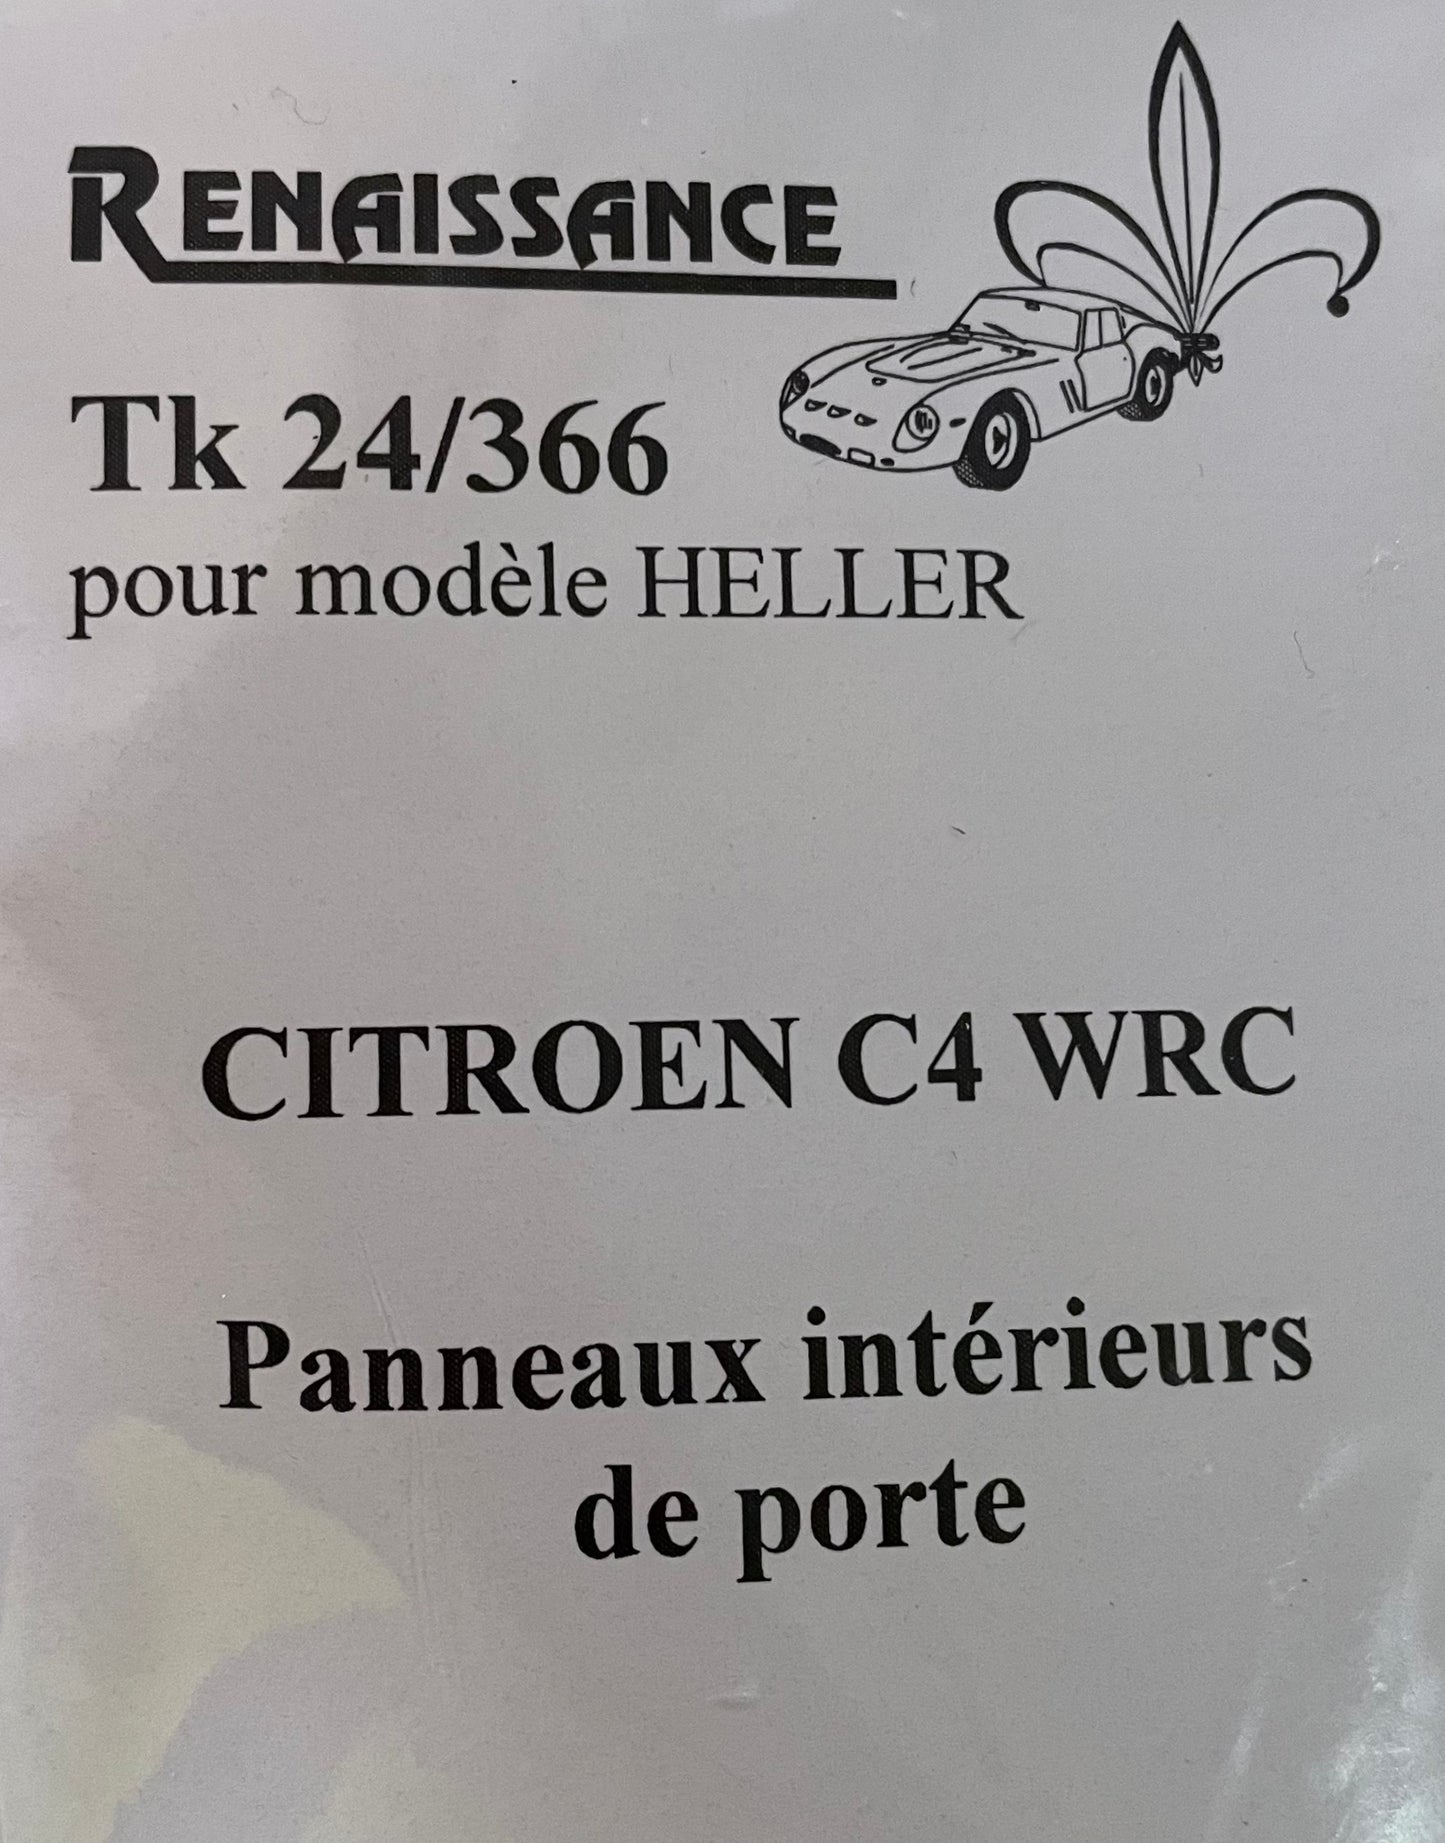 PANEL DOORS FOR CITROEN C4 WRC